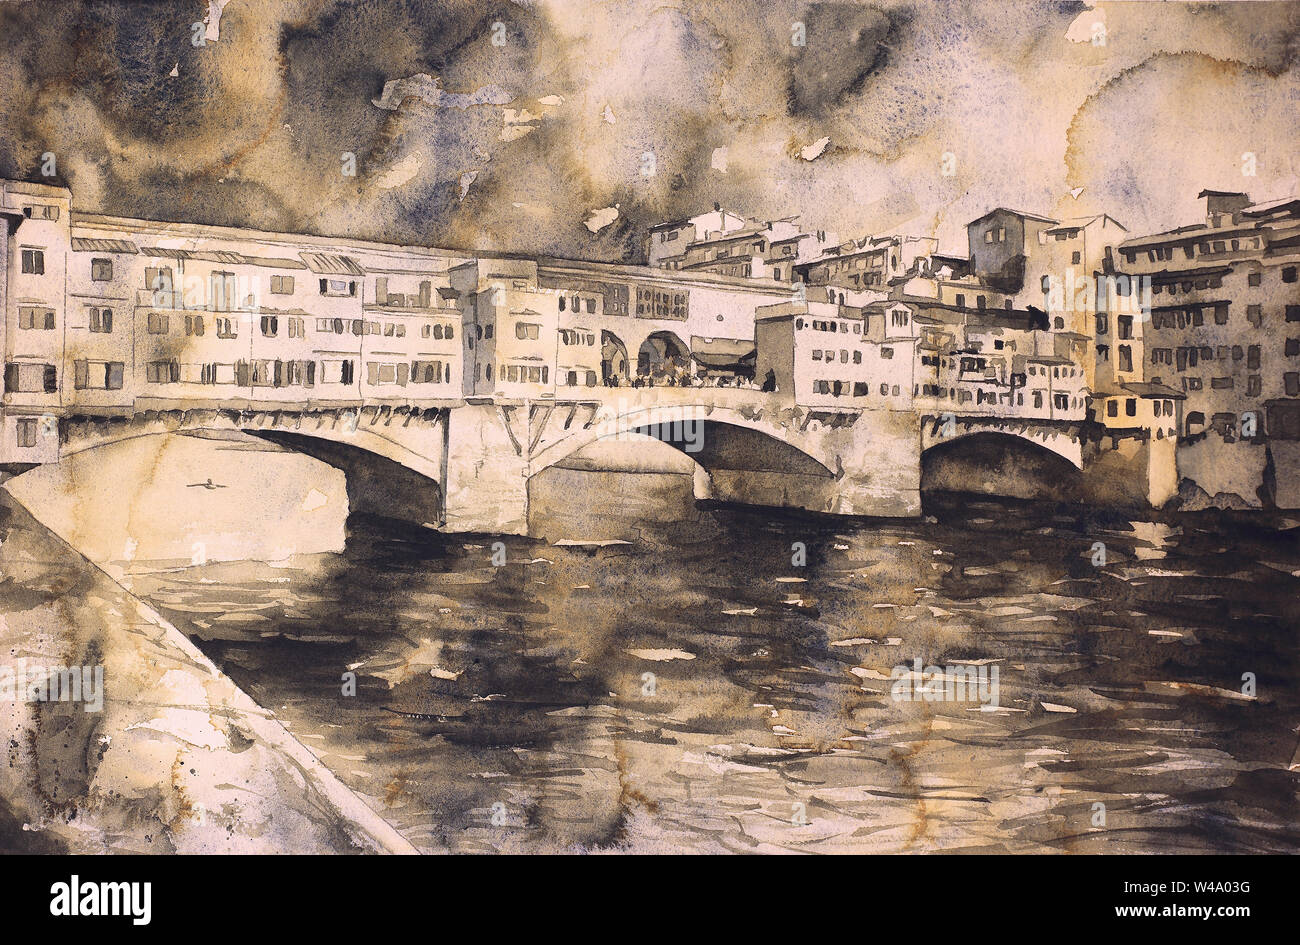 Le Ponte Vecchio dans la ville médiévale de Florence, Italie. Aquarelle de Ponte Vecchio, Florence art Banque D'Images